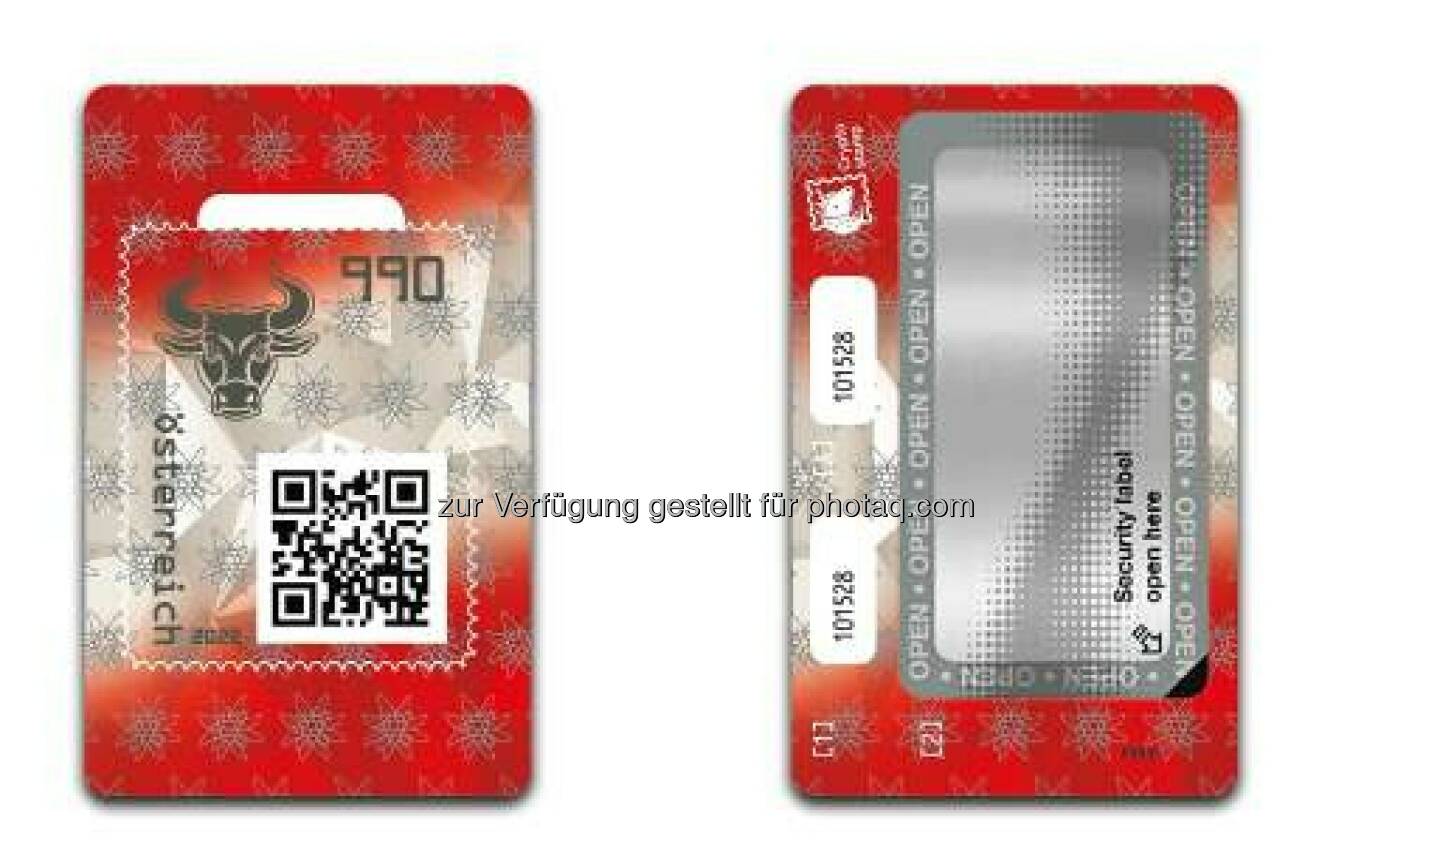 Crypto stamp erscheint in zwei Ländern und mit Augmented Reality: Auf der neuen Crypto stamp 4.0 der Österreichischen Post ist der Bulle zu sehen, sie ist in rot-weiß-rot gehalten und zeigt zusätzlich das Edelweiß. Credit: Österreichische Post